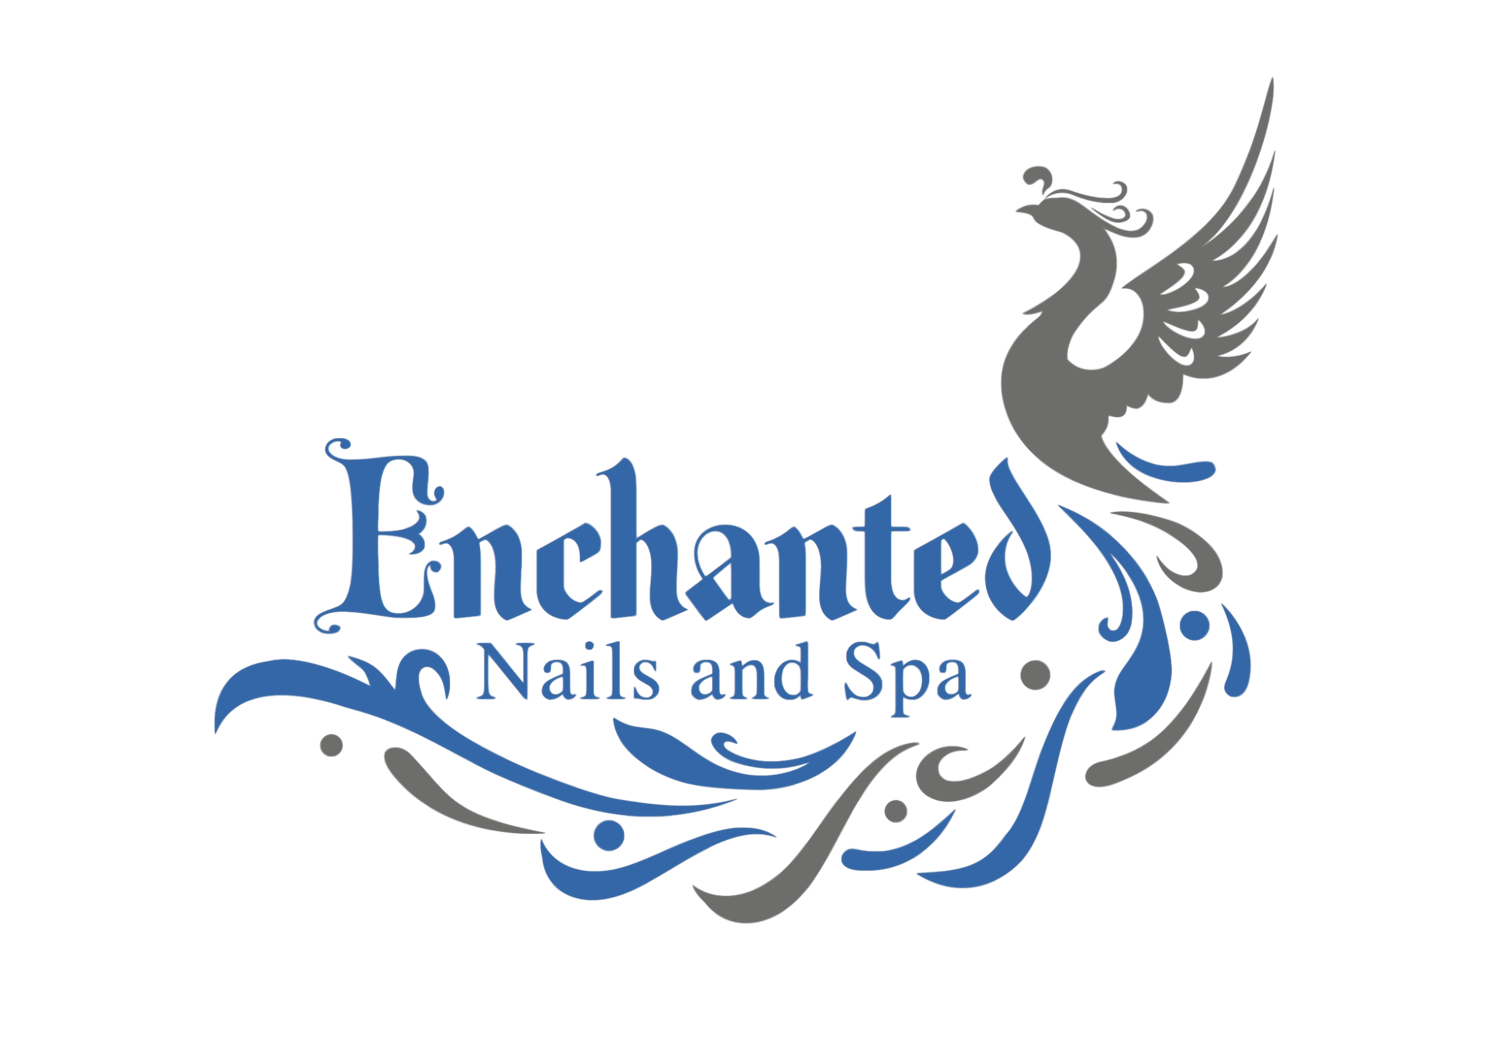 Enchanted Nails and Spa